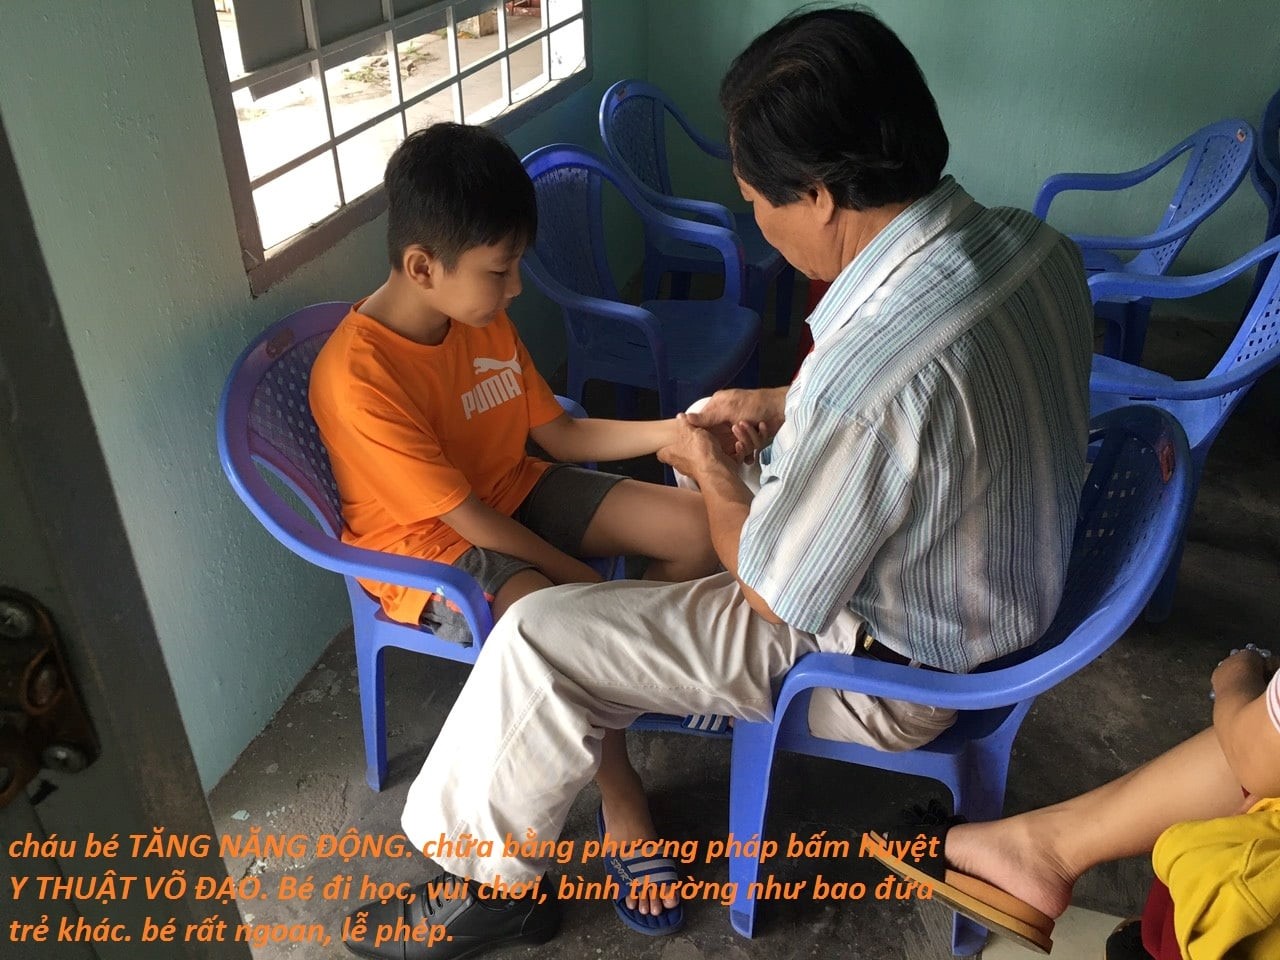 Lương y võ sư Lê Hùng Sơn: Giúp hàng ngàn bệnh nhân Tăng động lành bệnh bằng phương pháp bấm huyệt theo y thuật võ đạo